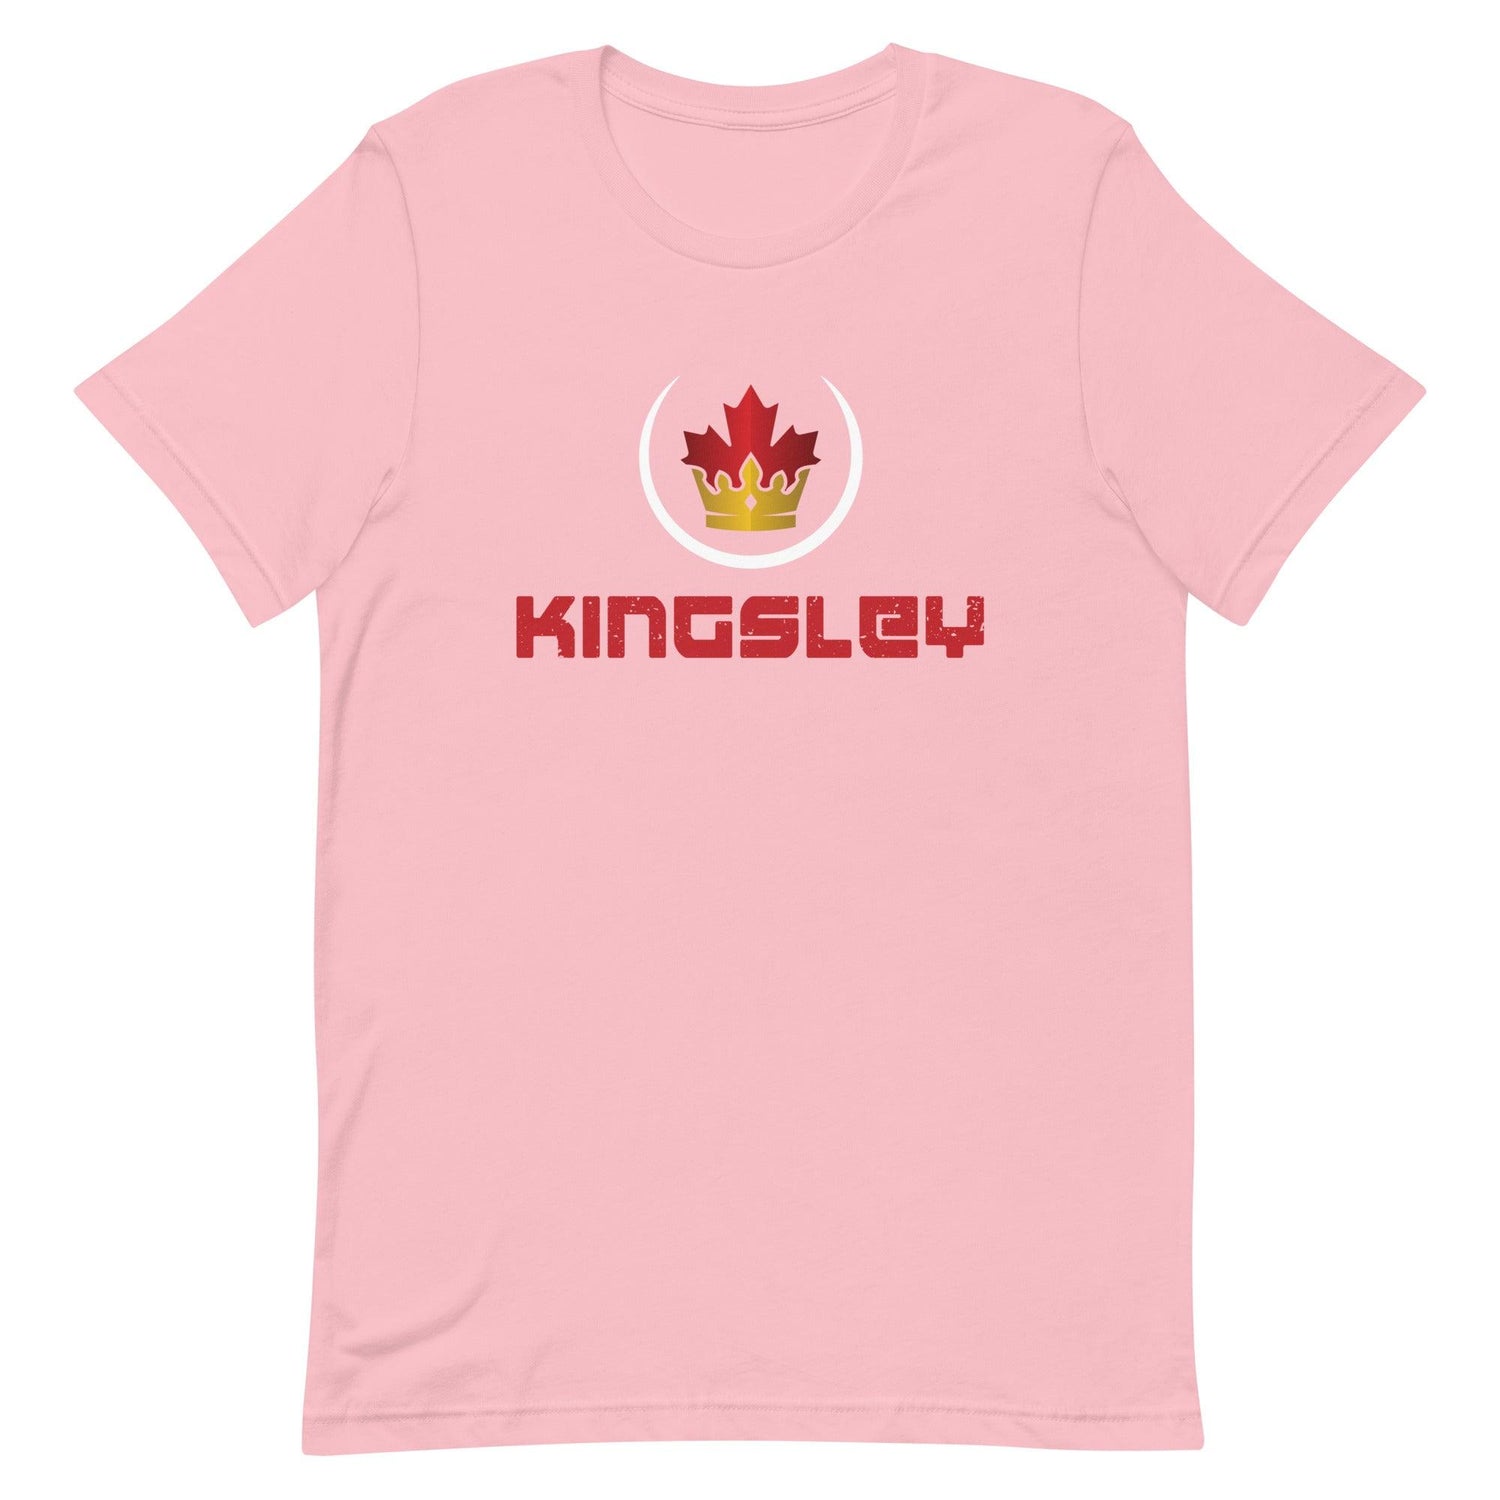 Aaron Kingsley Brown "Royalty" t-shirt - Fan Arch